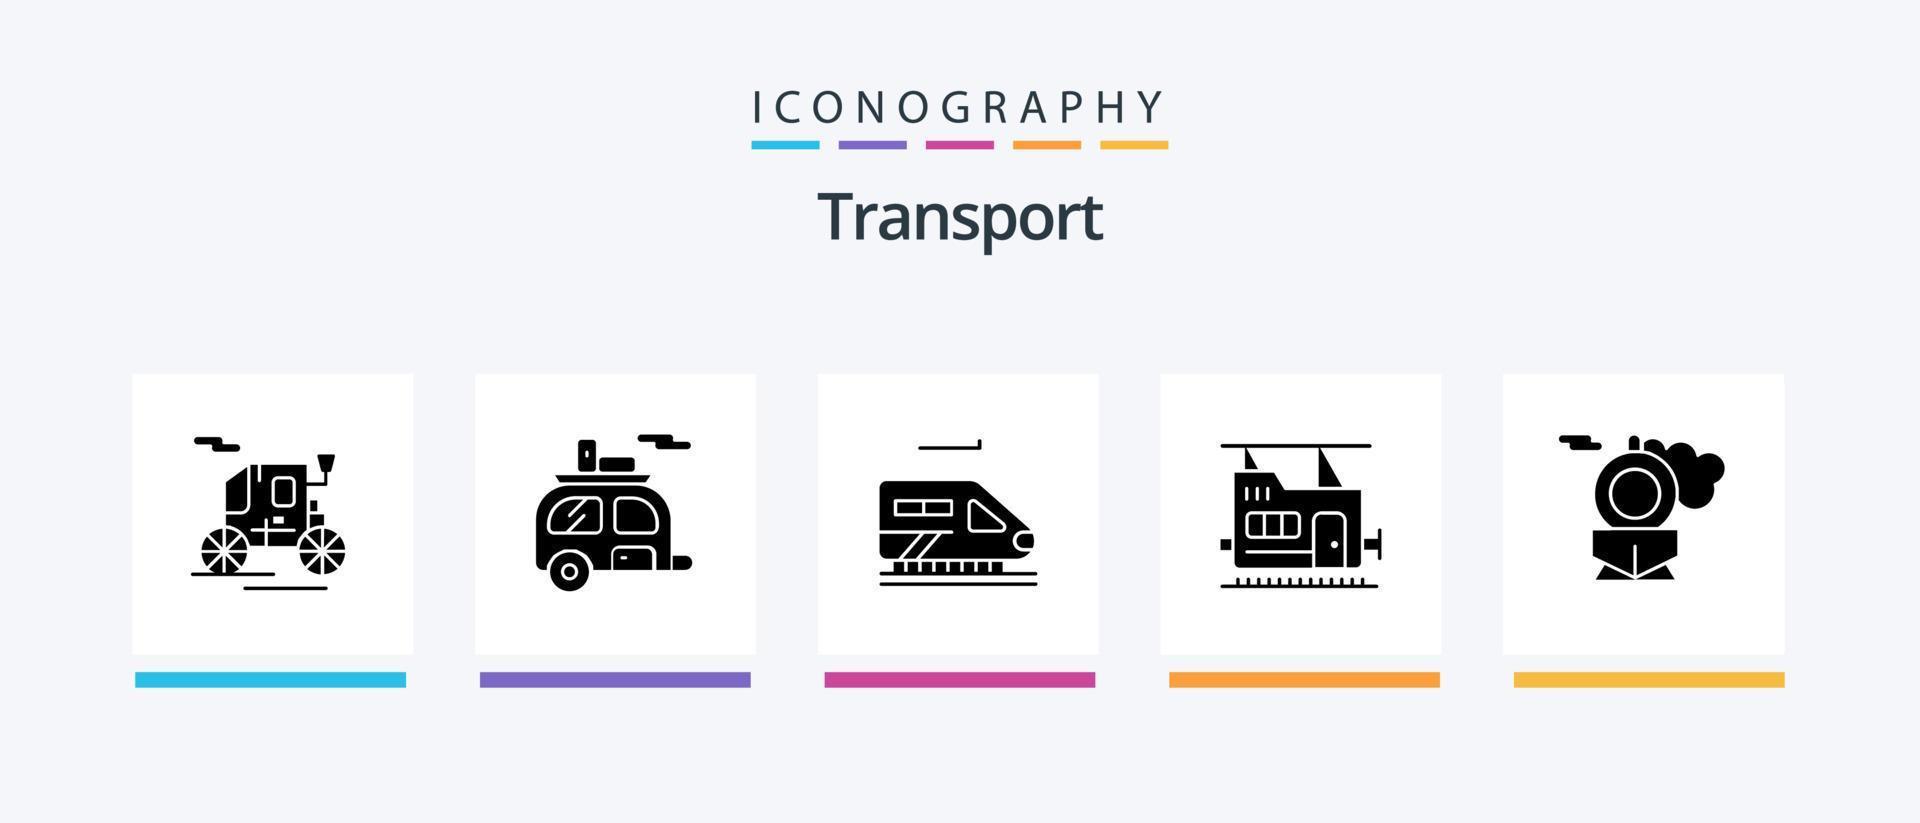 Transport Glyph 5 Icon Pack Including . train. train. retro. train. Creative Icons Design vector